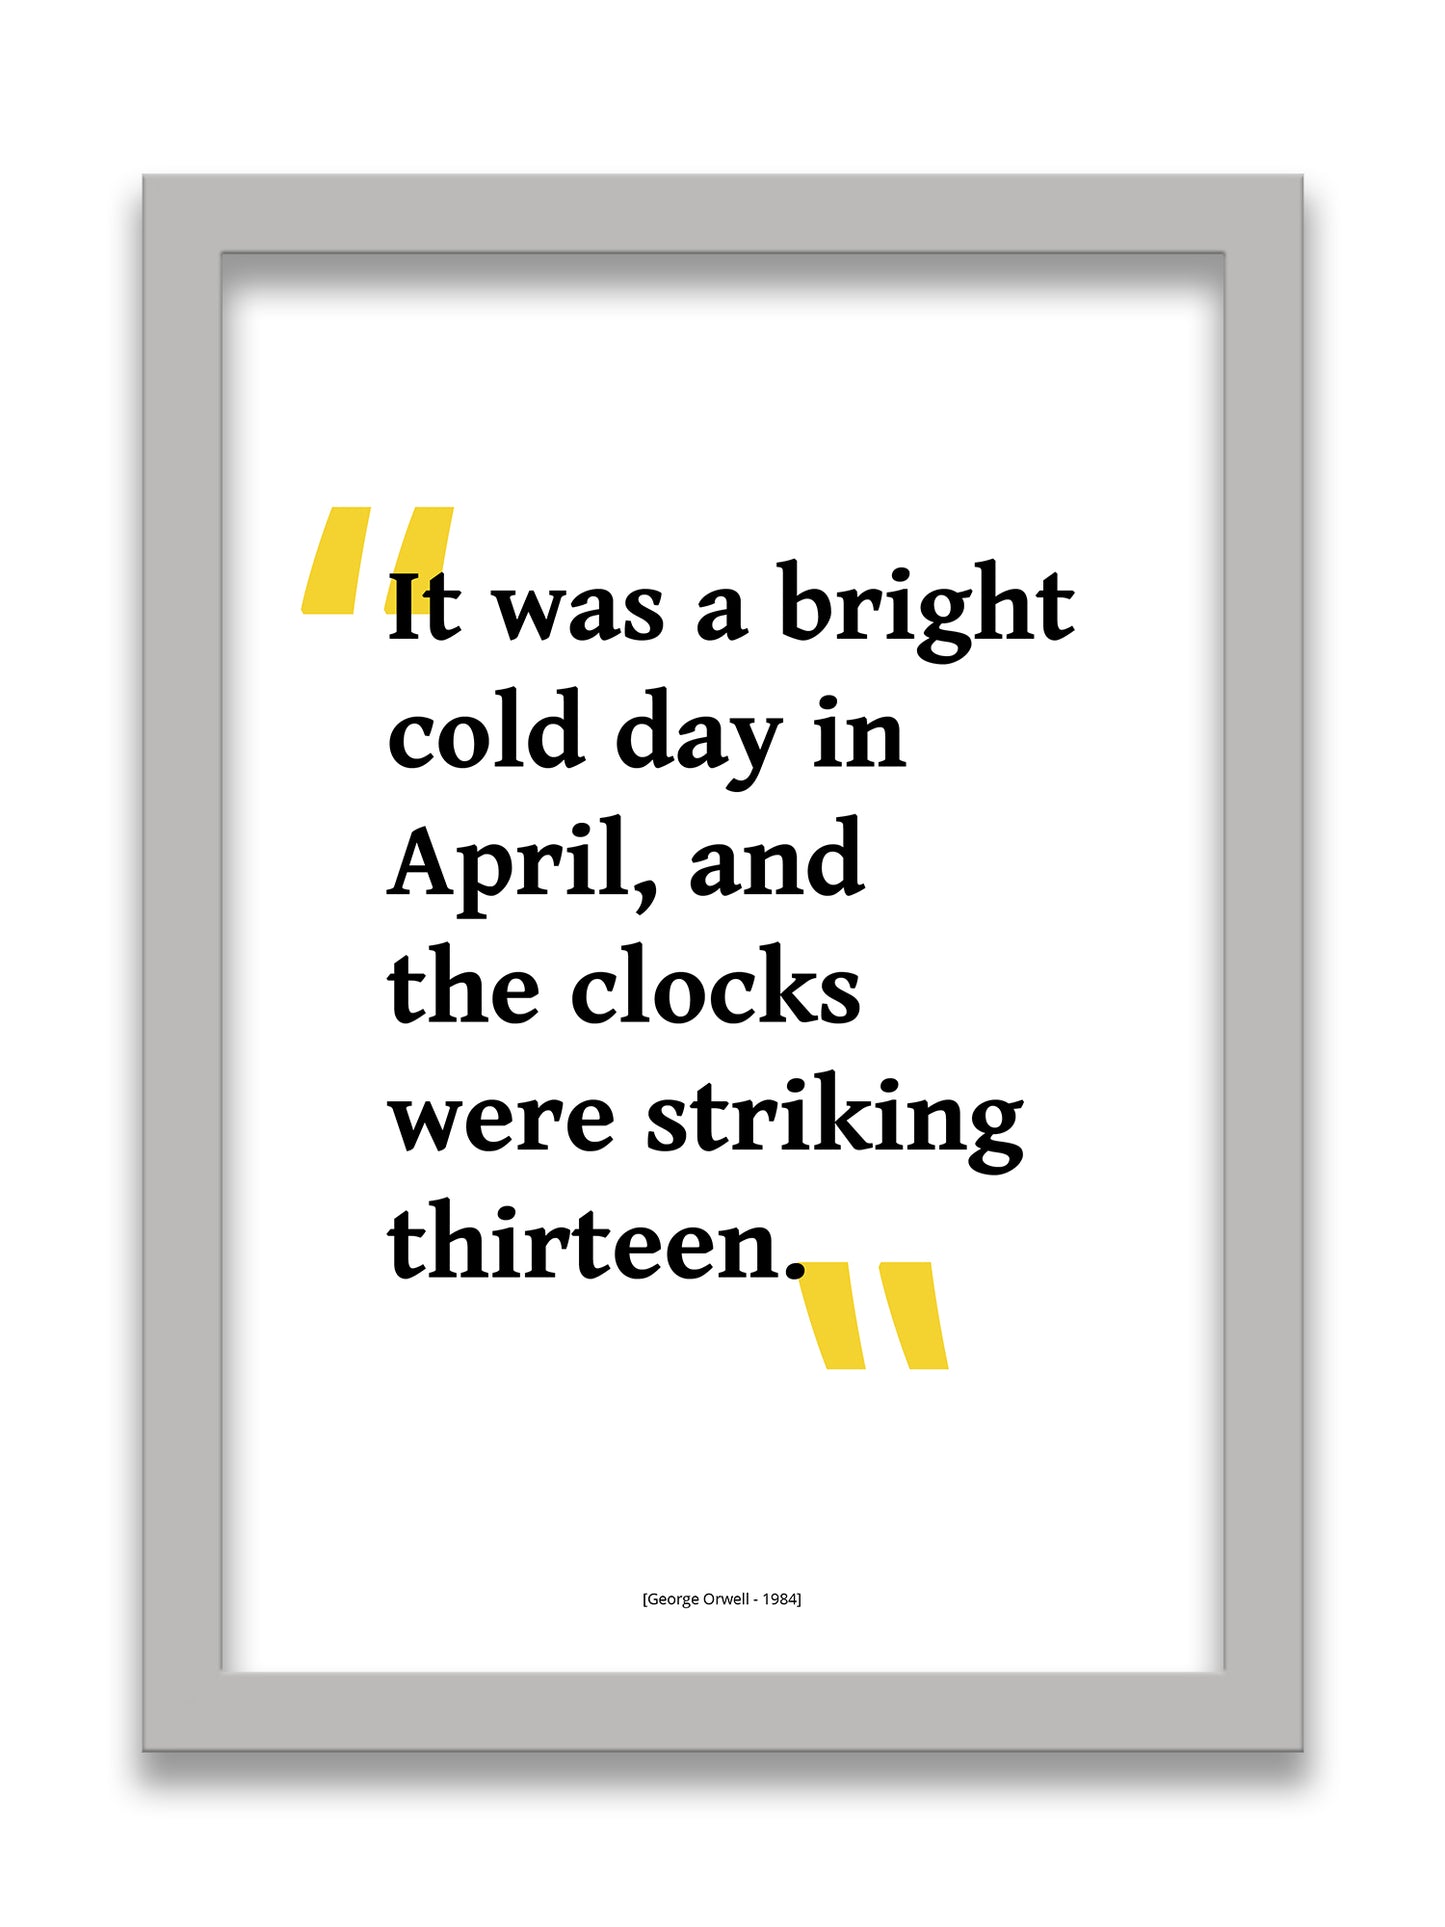 George Owell - 1984 Clocks